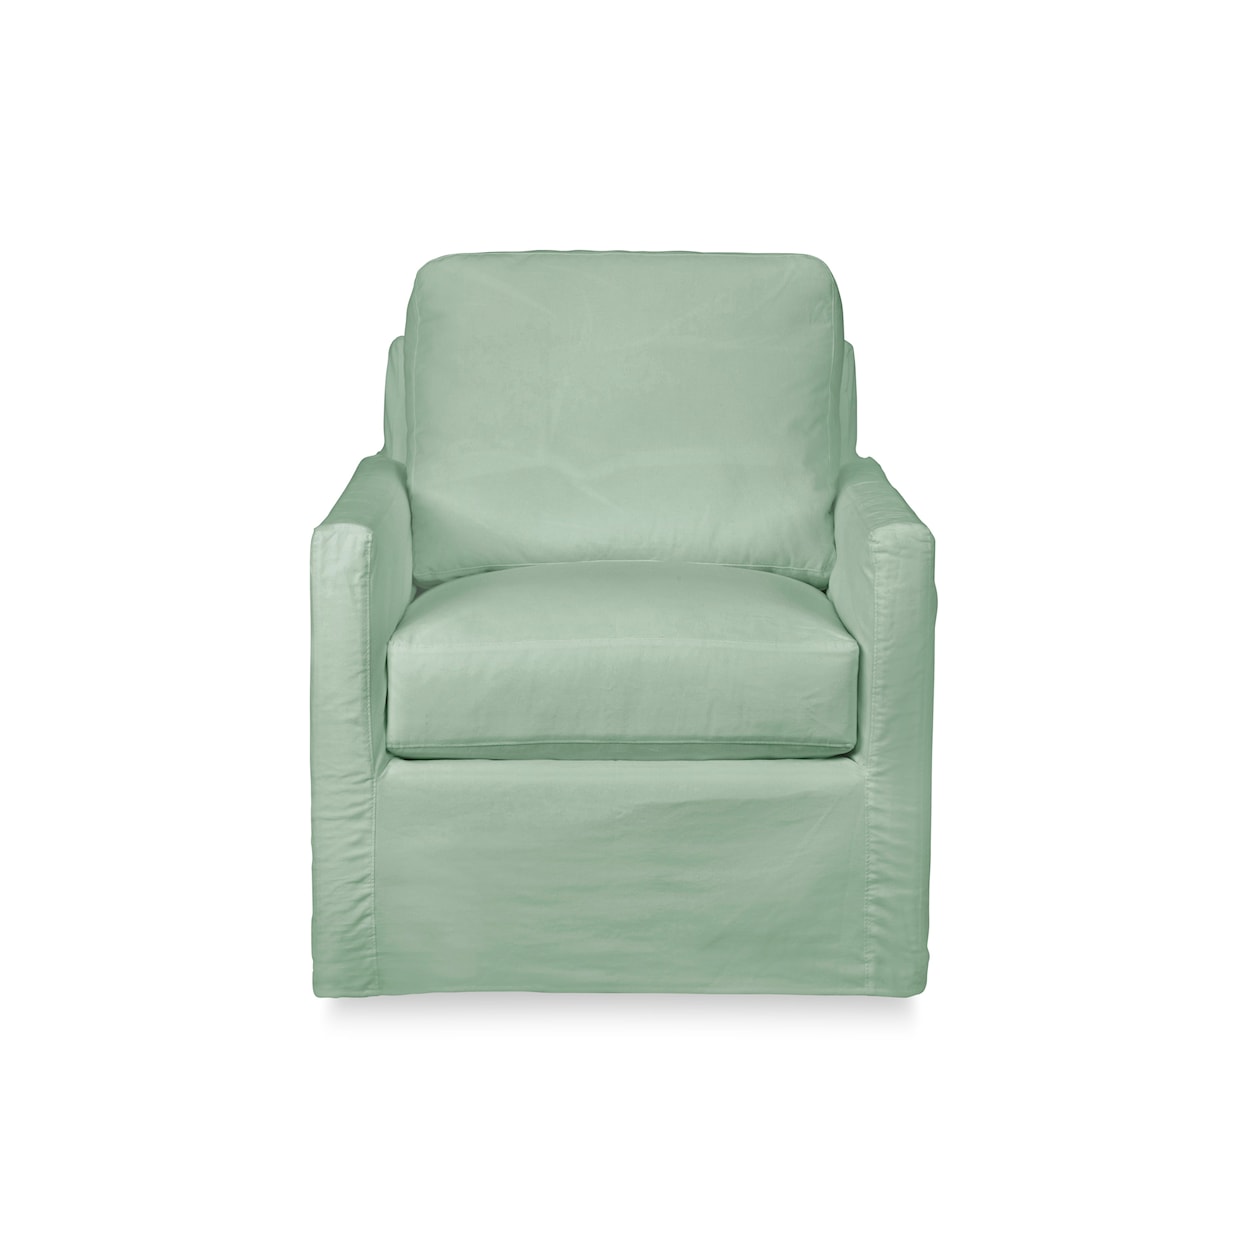 Stone & Leigh Furniture Savannah Accent Chair